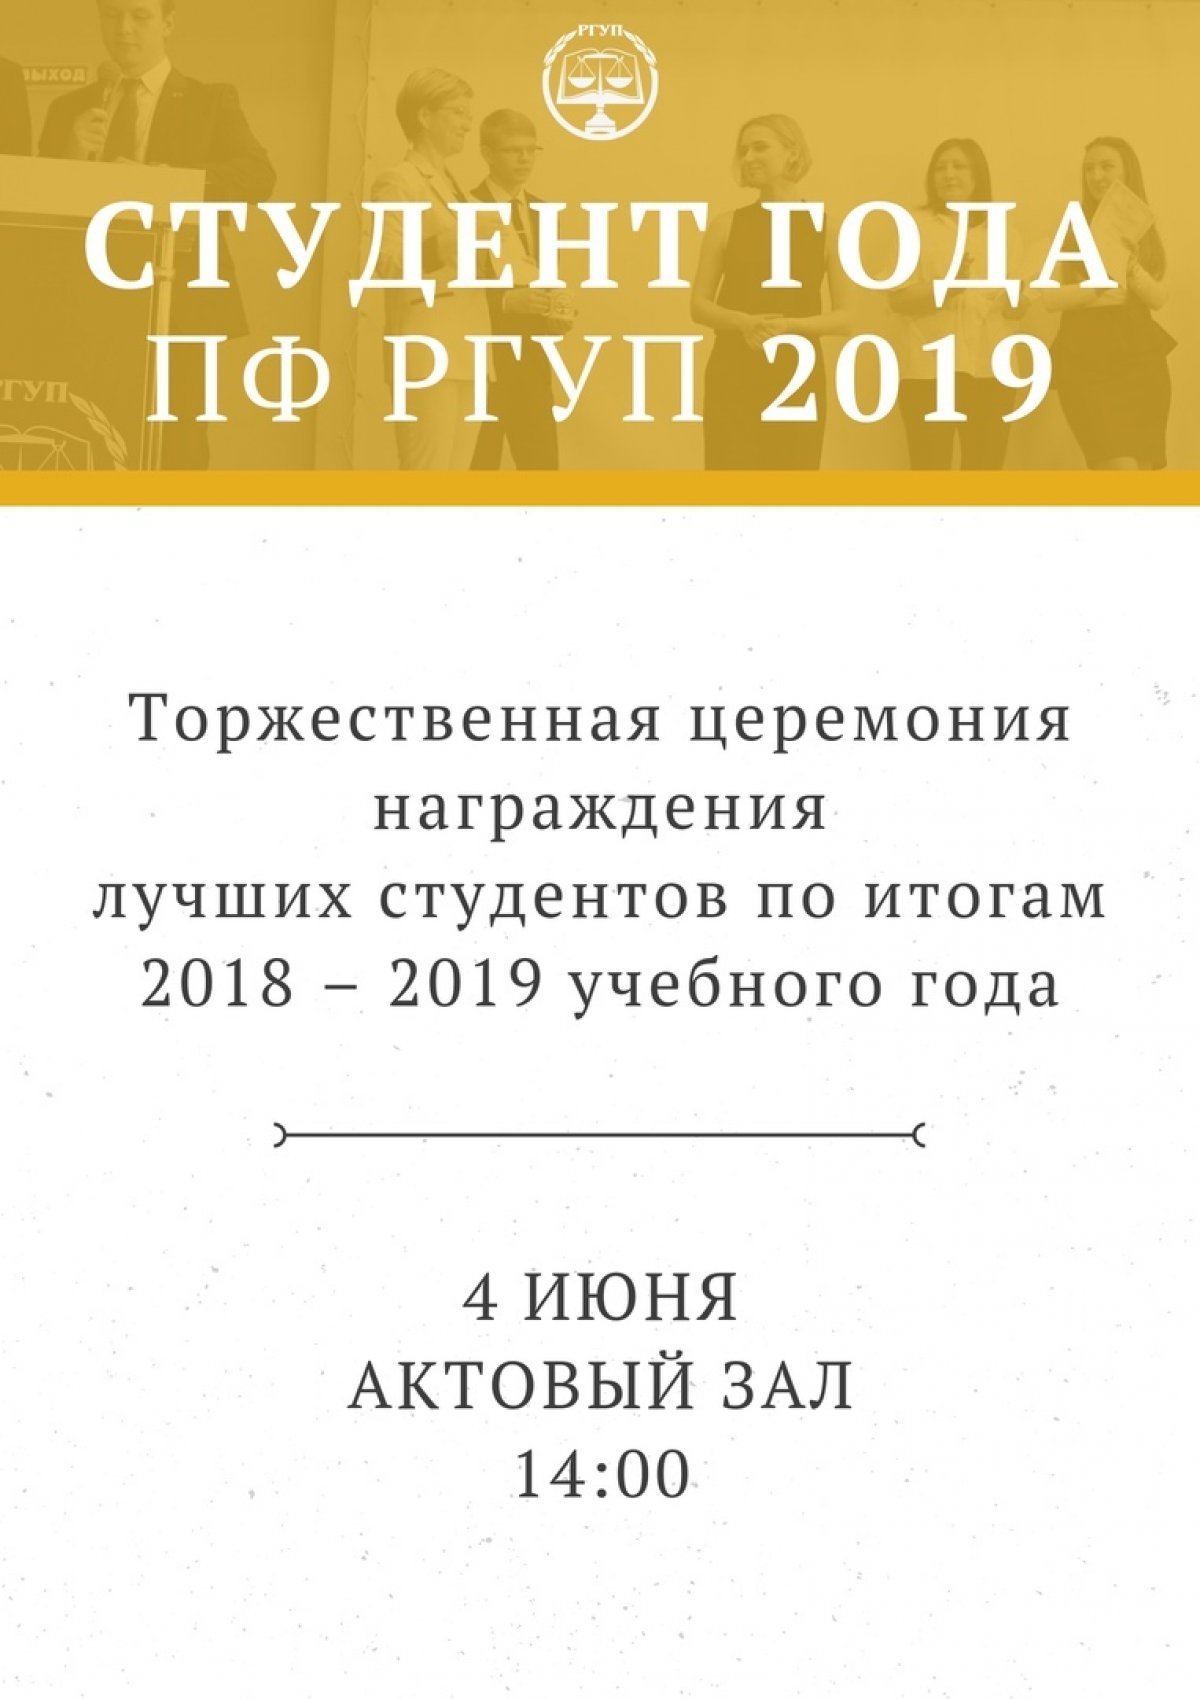 Уже совсем скоро, 4 июня, в рамках Всероссийского конкурса «Студент года» состоится торжественная церемония награждения лучших студентов по итогам 2018–2019 учебного года!